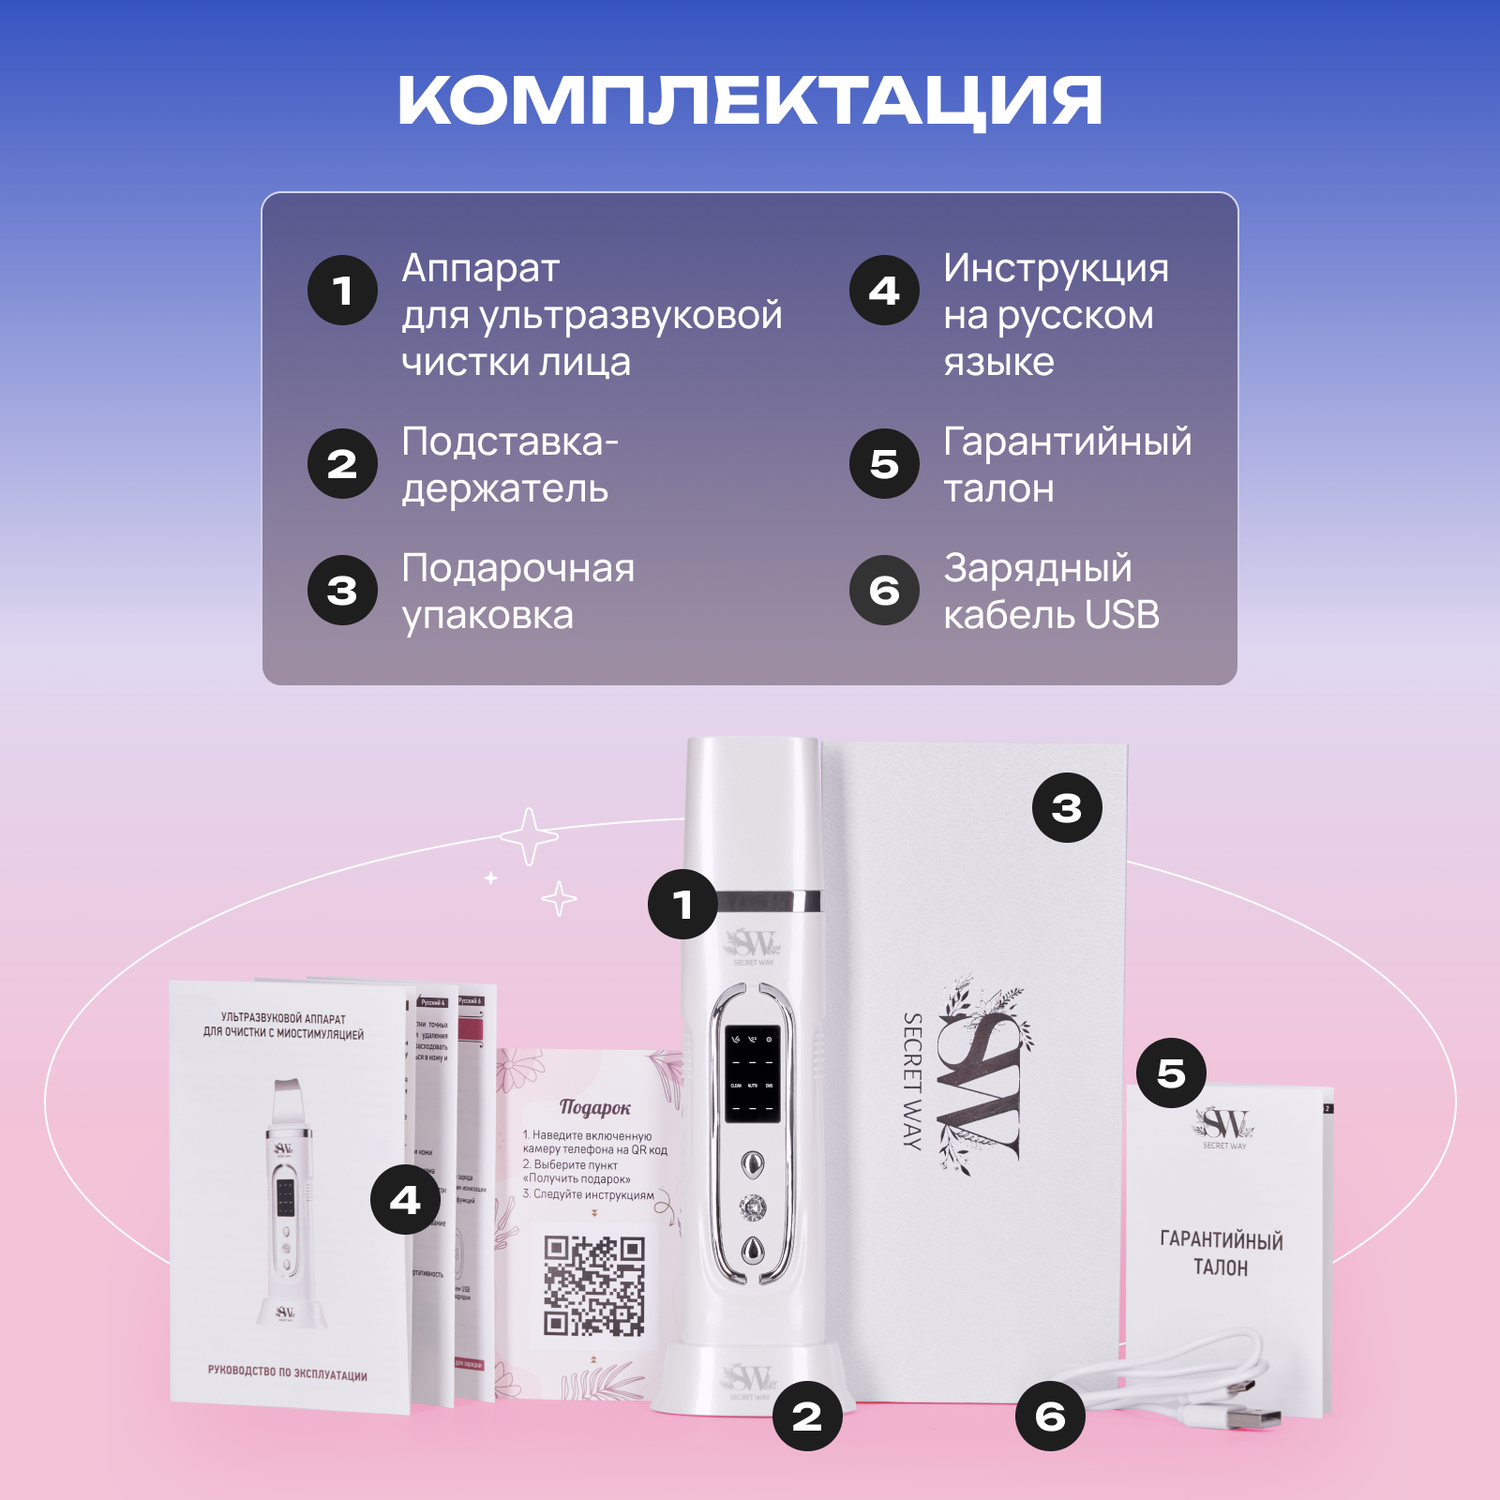 Новый аппарат для вакуумной чистки кожи лица Vacu Silky Skin на сайте Gezatone